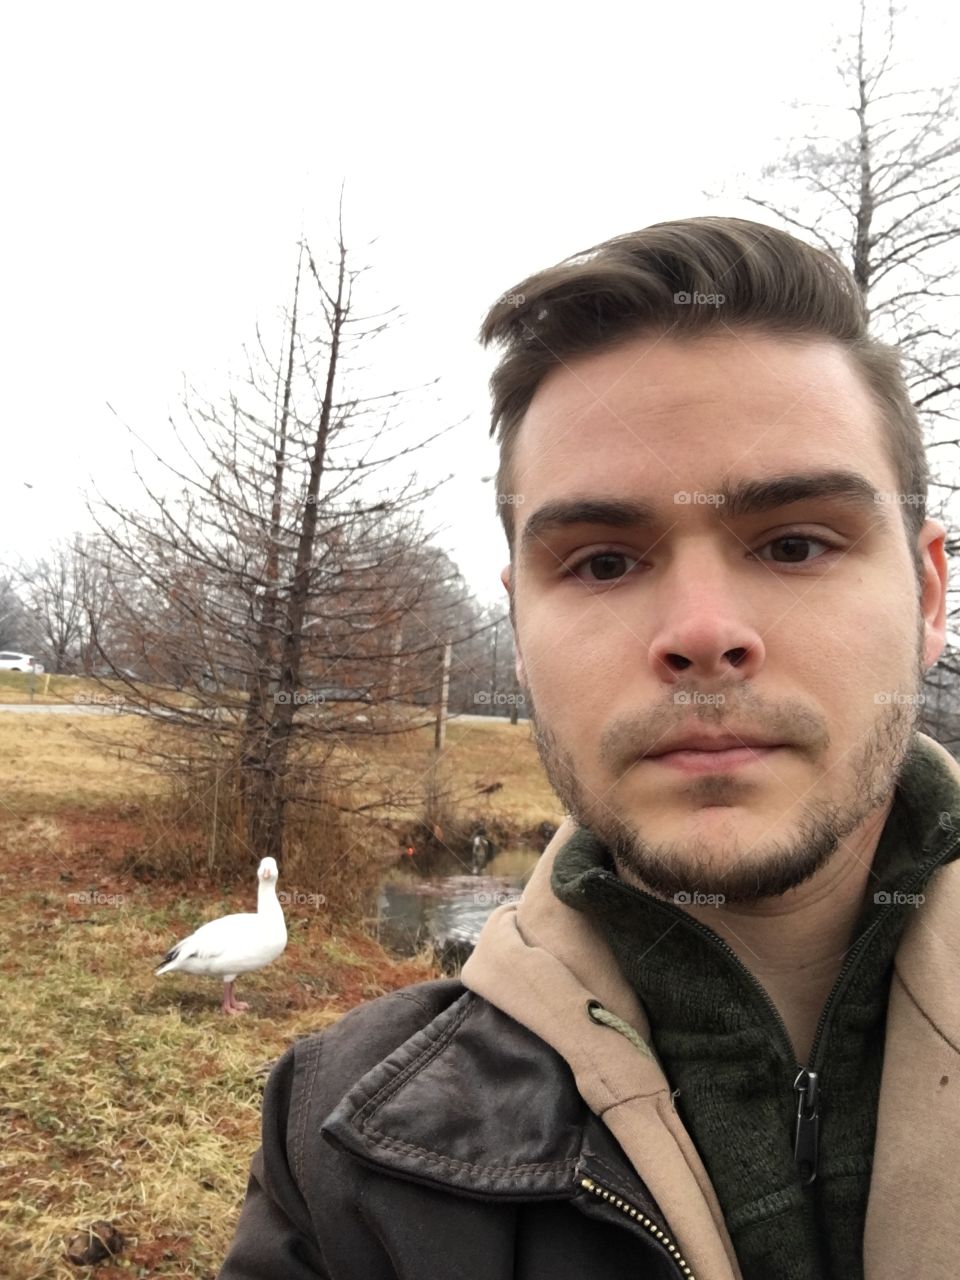 Man and duck selfie.